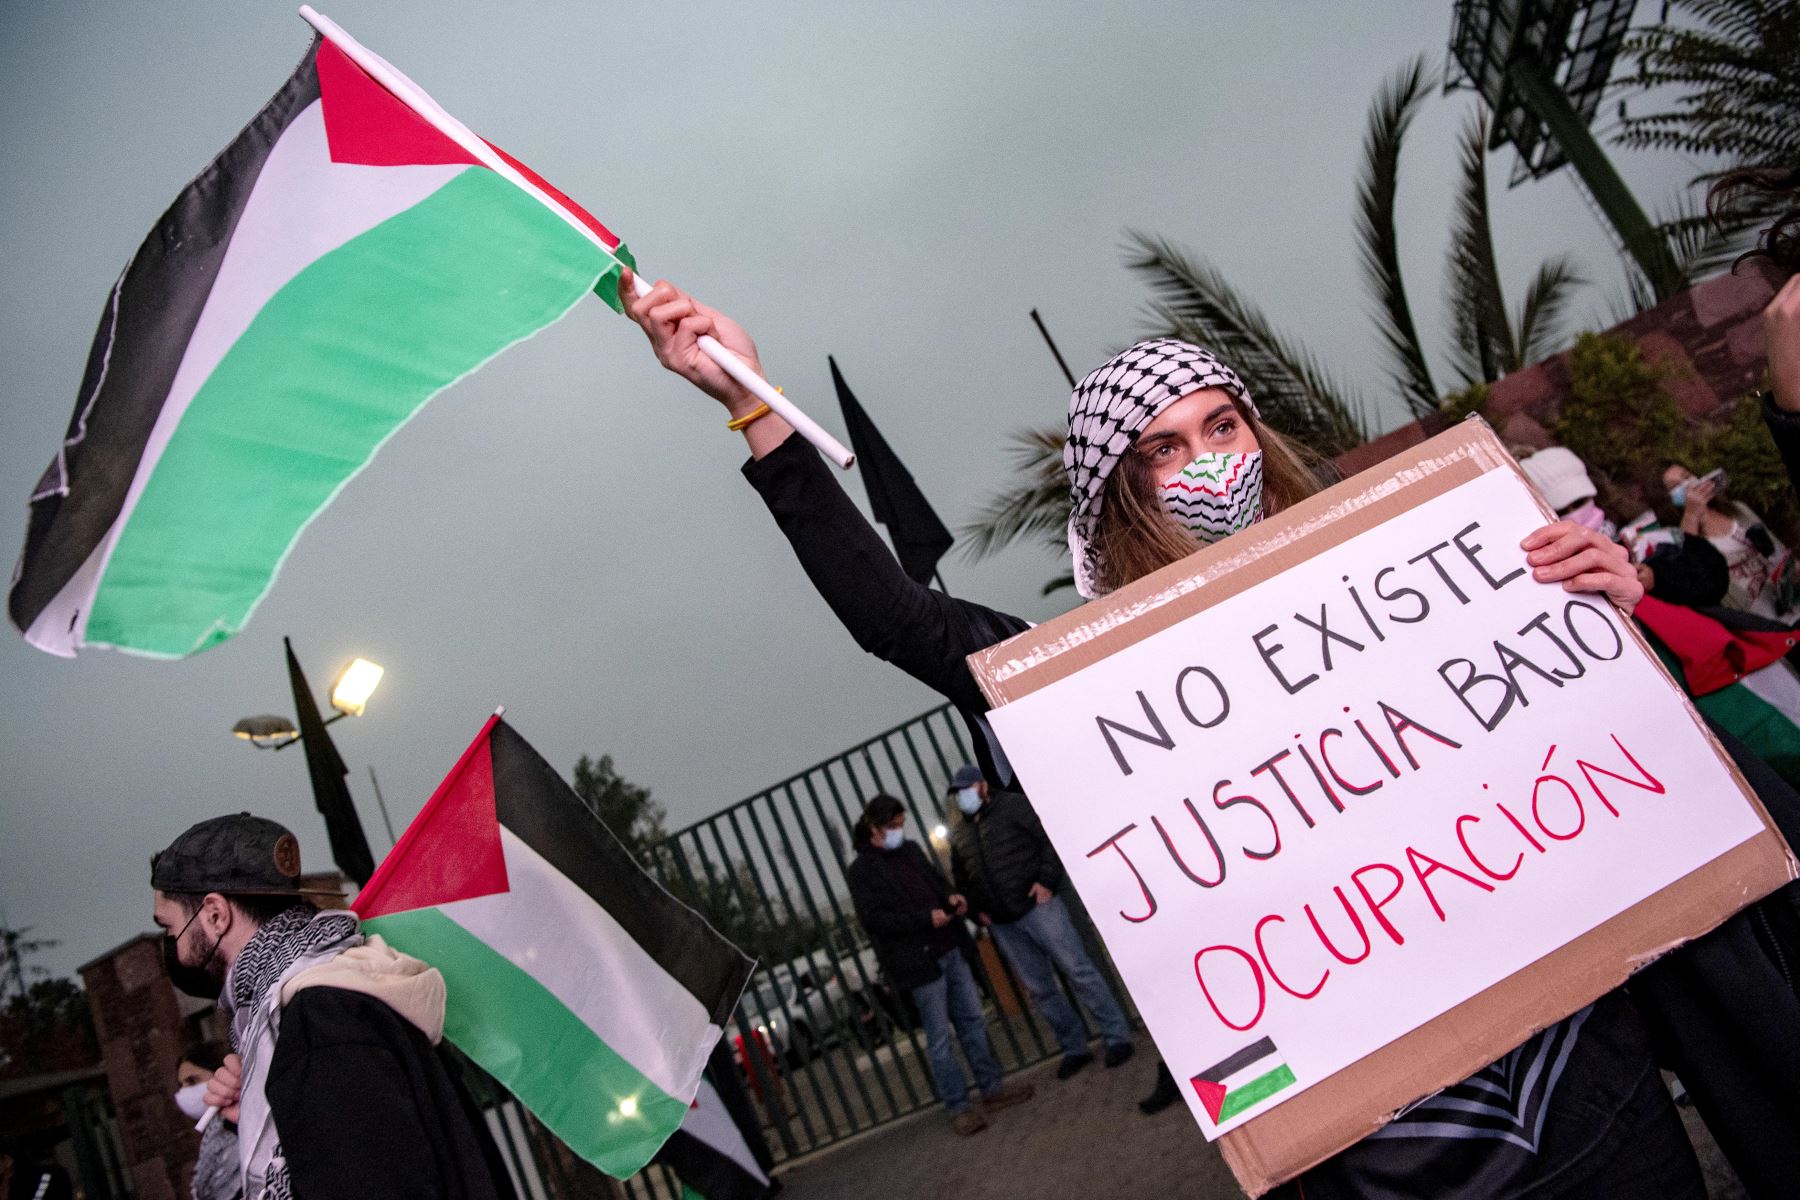 Los manifestantes iniciaron la protesta fuera del club Palestino con bailes, banderas palestinas y pancartas con leyendas como "no existe justicia con ocupación" y "no más genocidio". Foto: AFP